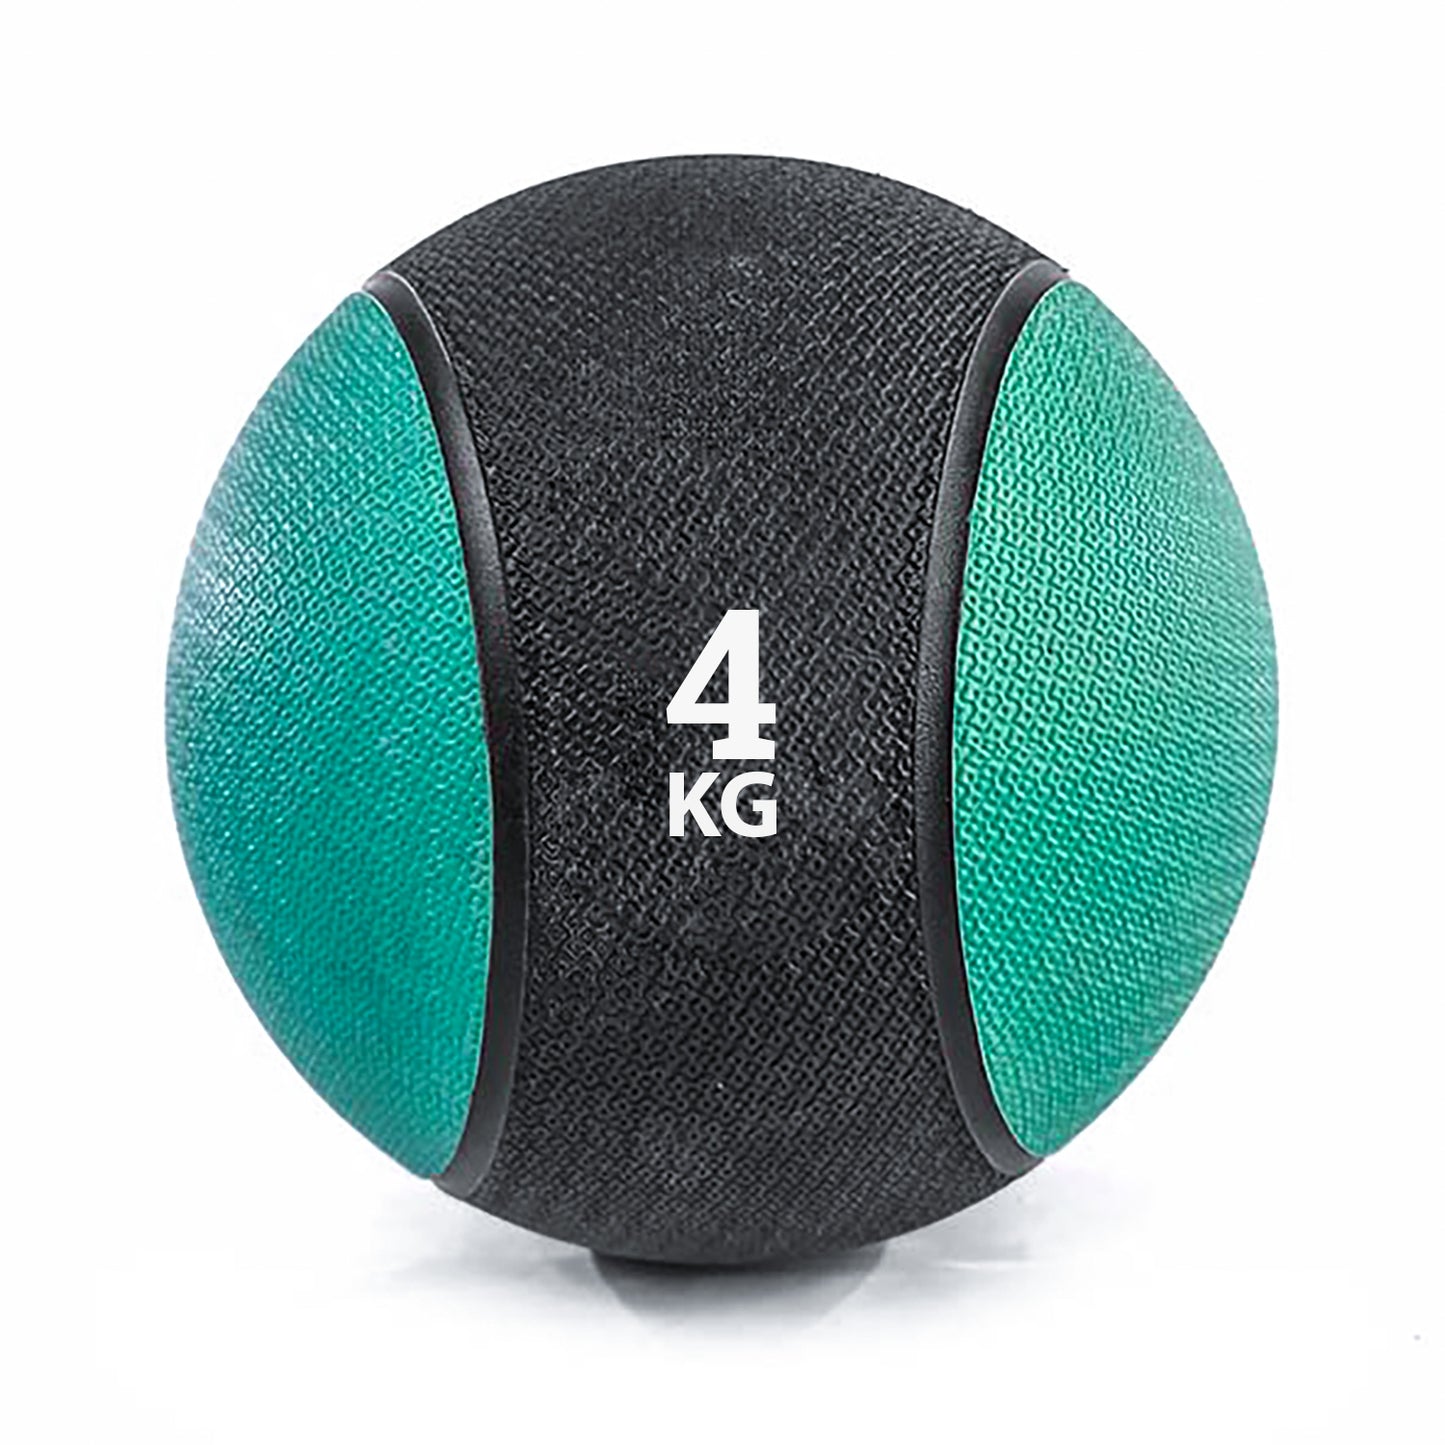 كرة طبية من المطاط لاعادة التأهيل و اللياقة البدنية - لون اسود و اخضر - وزن 4 كيلو جرام - Kanteen - كانتين